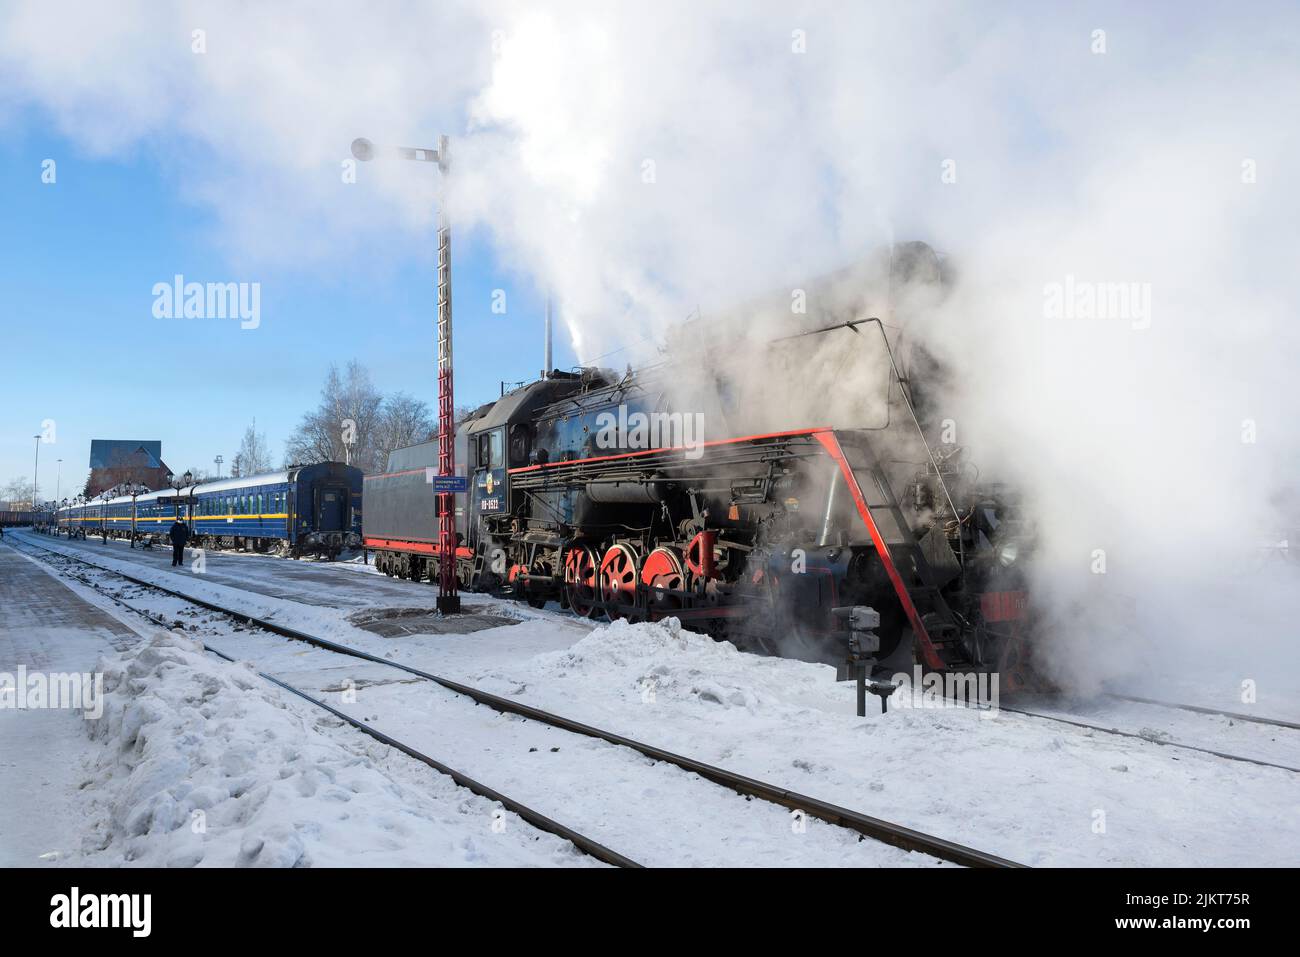 SORTAVALA, RUSIA - 10 DE MARZO de 2021: Antigua locomotora de vapor LV-0522 y tren turístico retro del 'Ruskeala Express' en la estación de Sortavala en una marcha helada Foto de stock